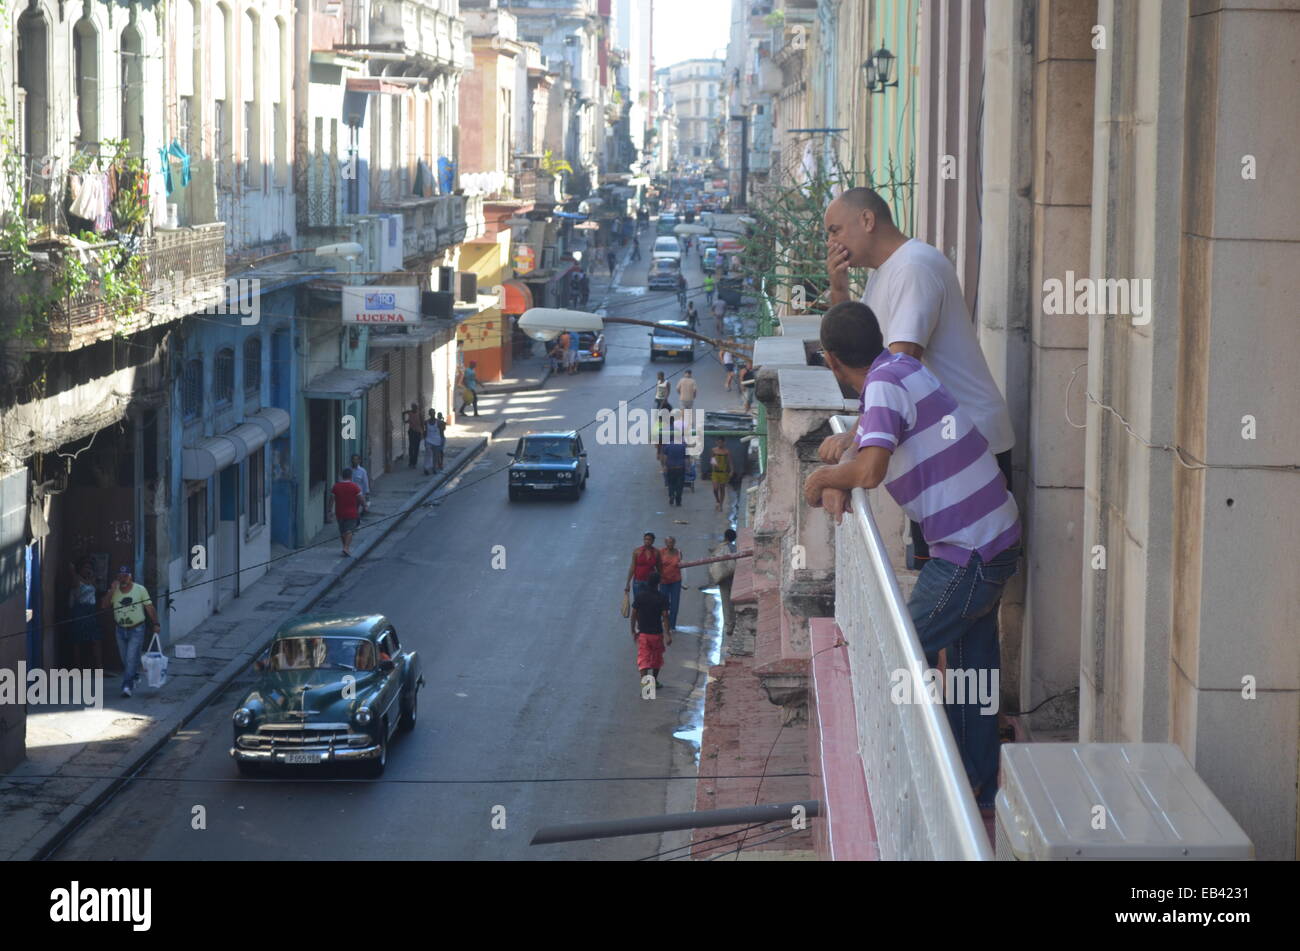 The streets of the Centro Habana / Habana Vieja districts of Havana, Cuba Stock Photo